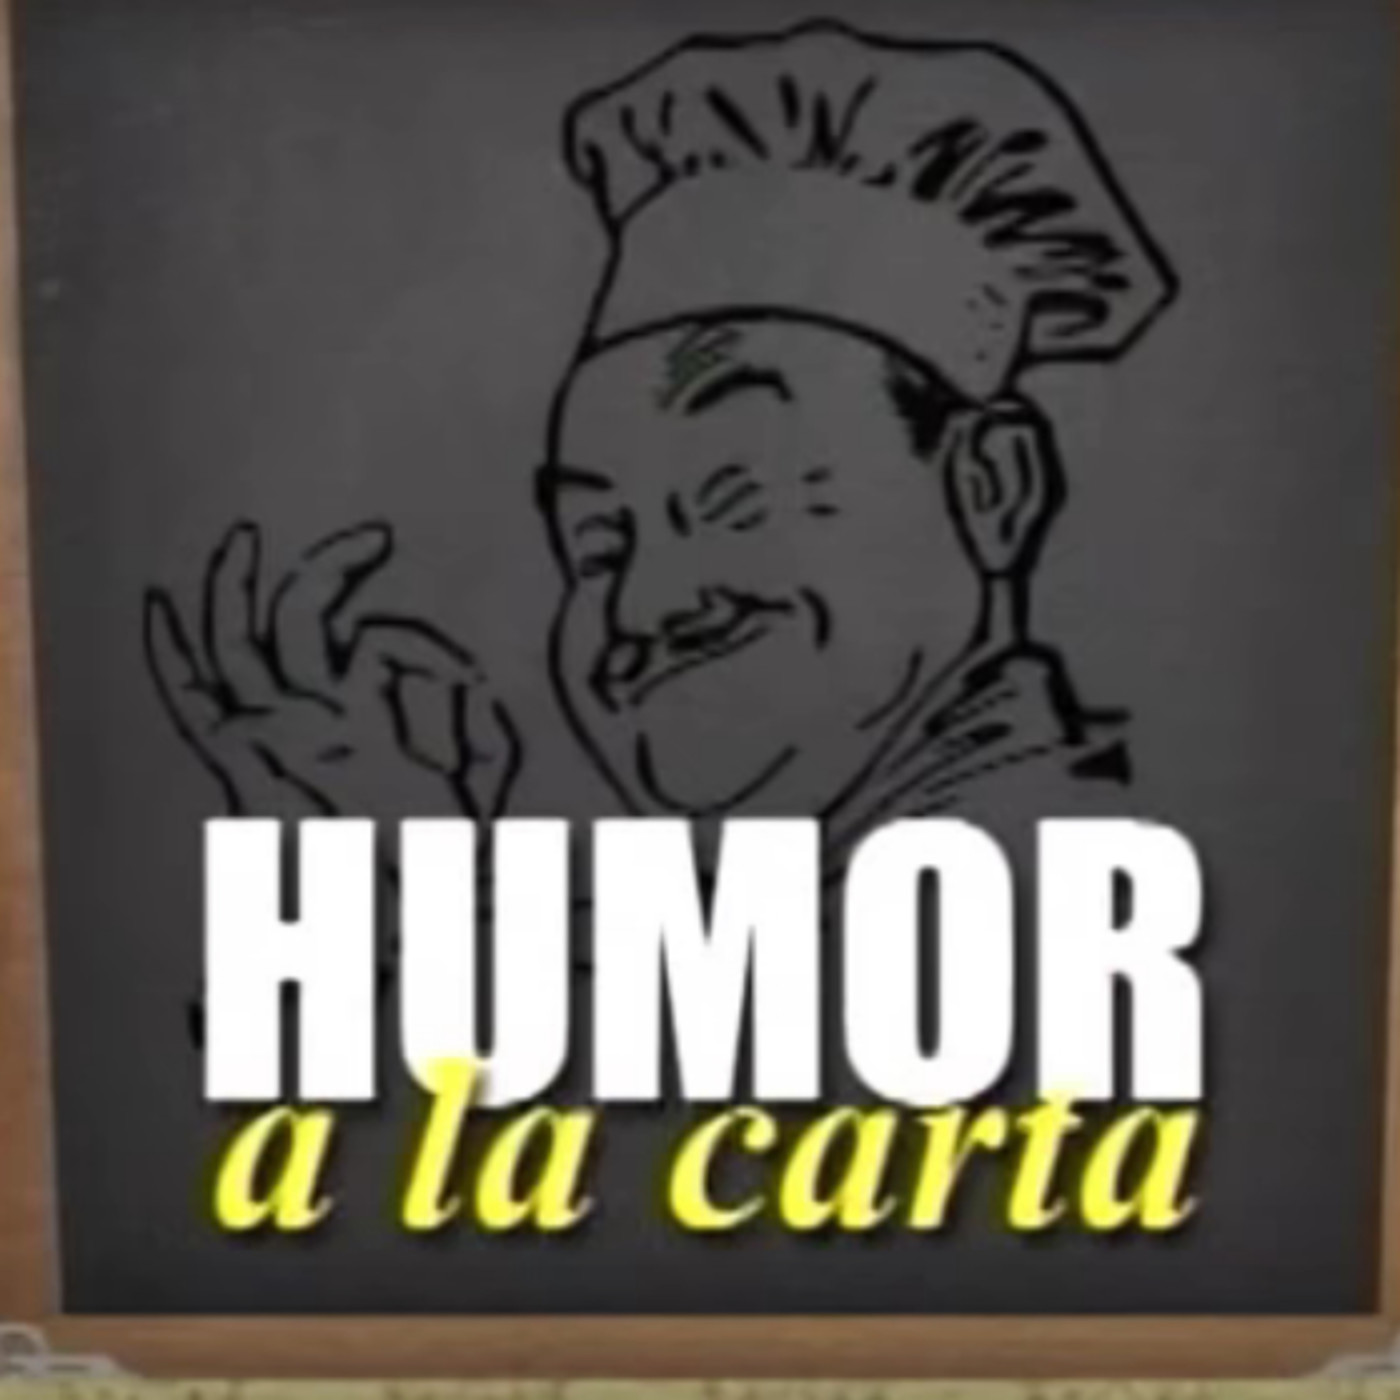 Humor Latino